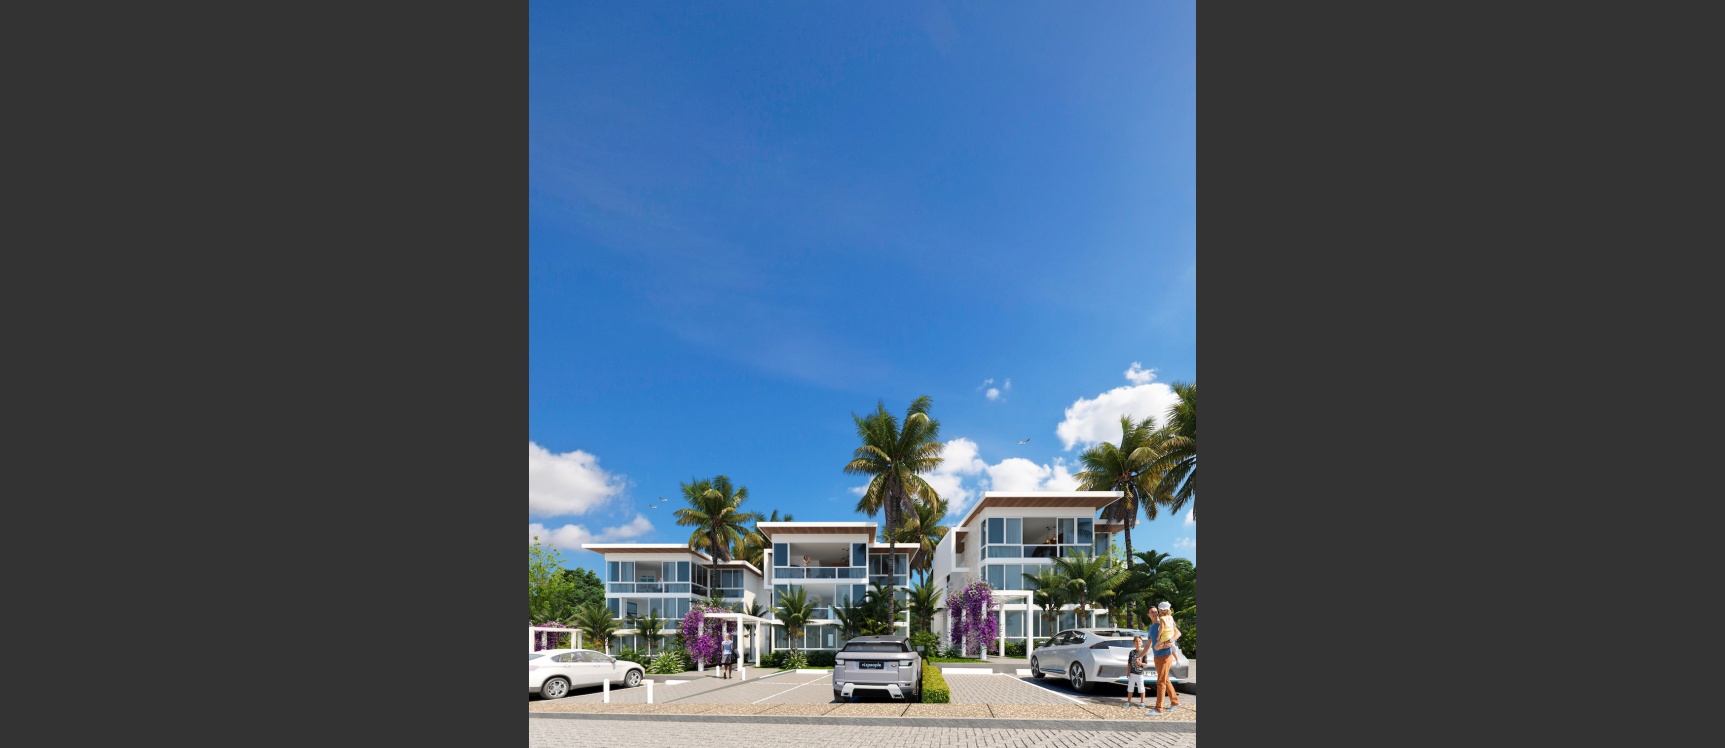 GeoBienes - Departamento 3 Dormitorios - Vista 2 - Planta Baja - Plusvalia Guayaquil Casas de venta y alquiler Inmobiliaria Ecuador